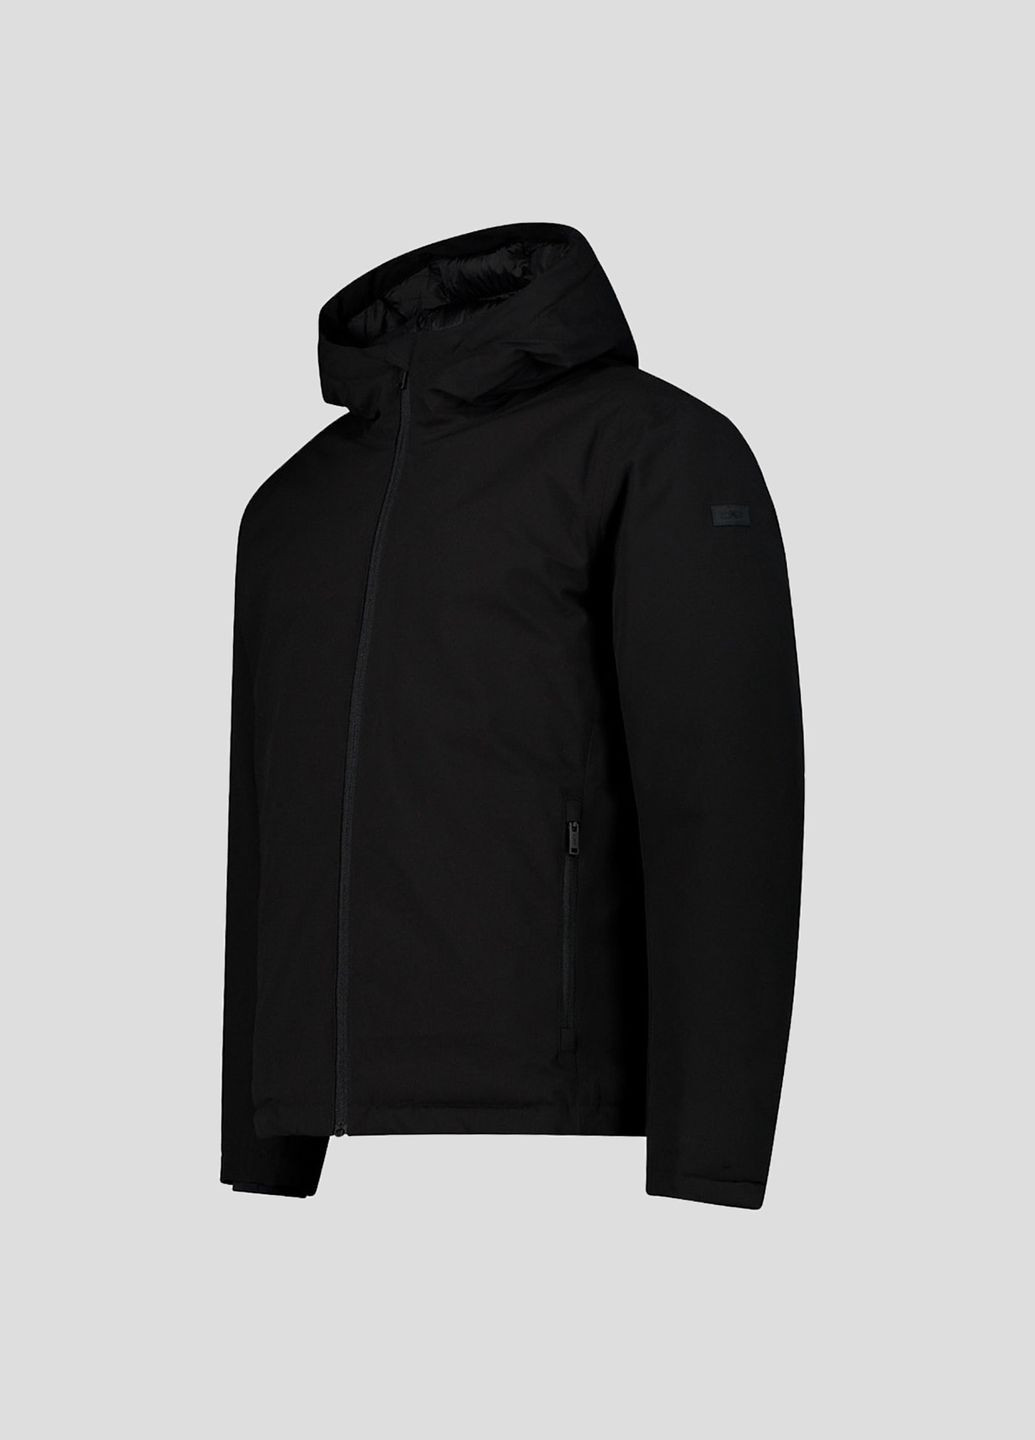 Черная зимняя мужская черная куртка на синтепоне man jacket fix hood CMP